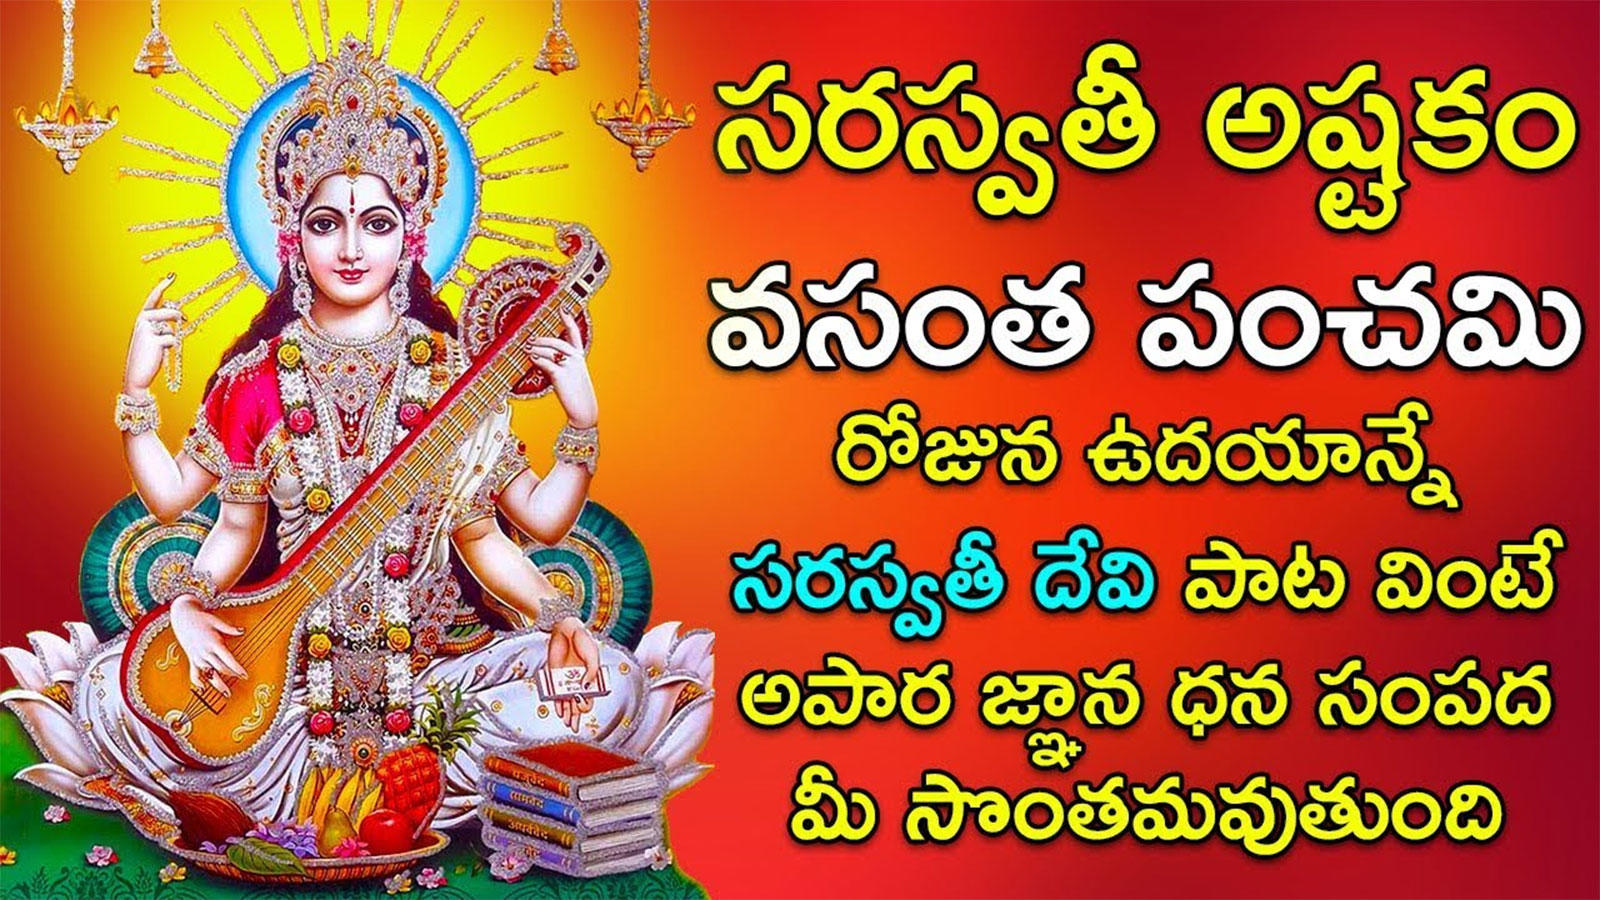 lakshmi devi and saraswathi devi images hd